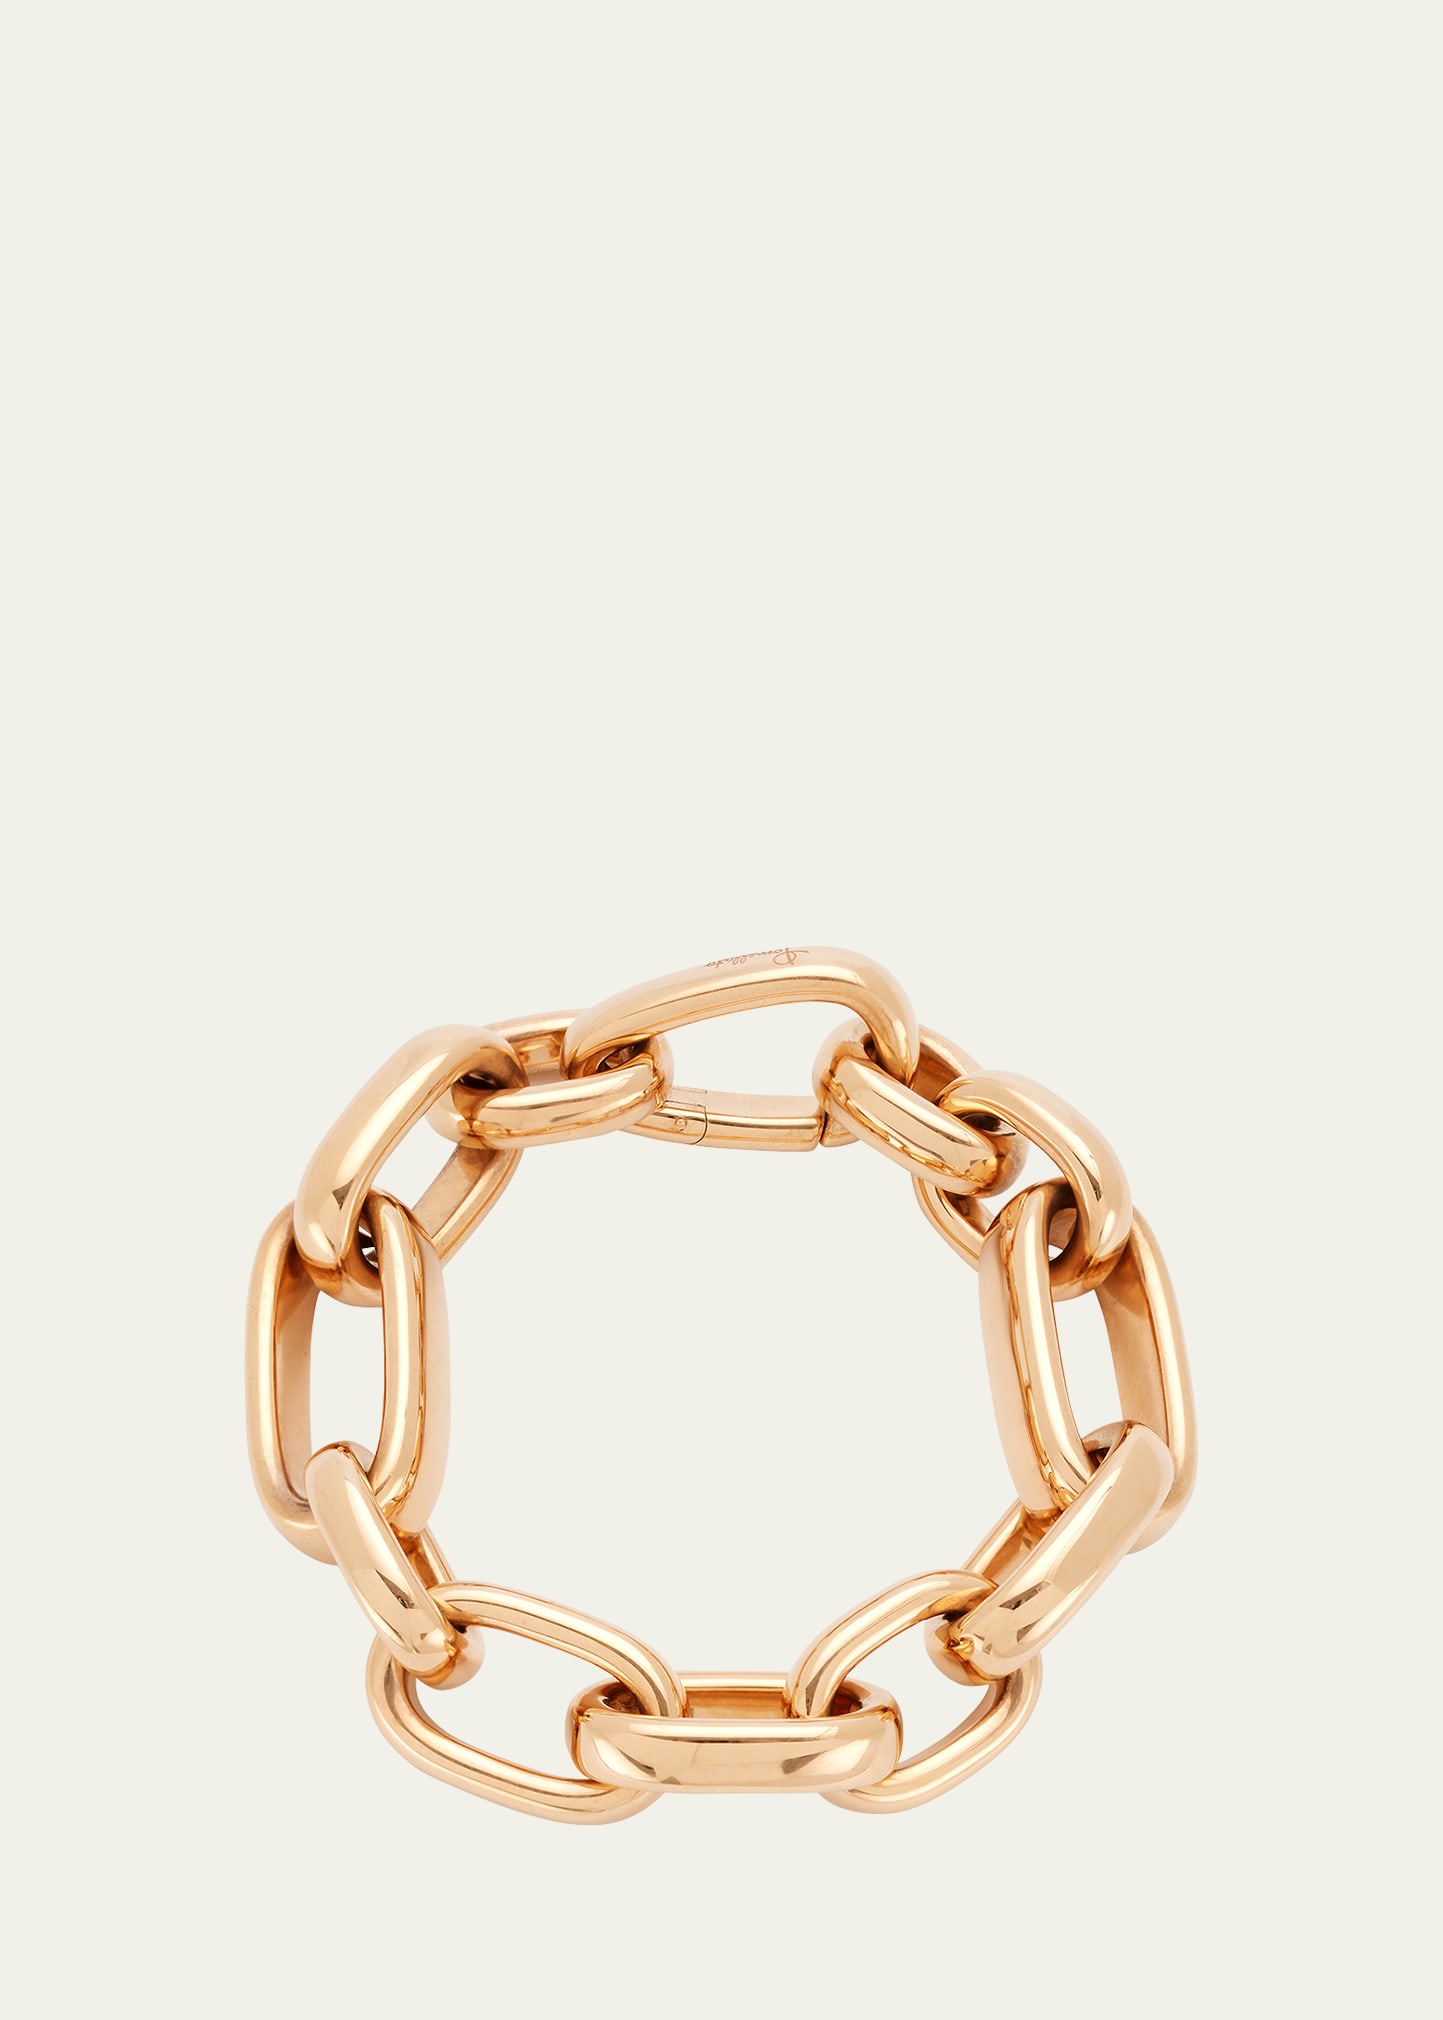 Iconica Bold 18K Rose Gold Chain Bracelet, Size L